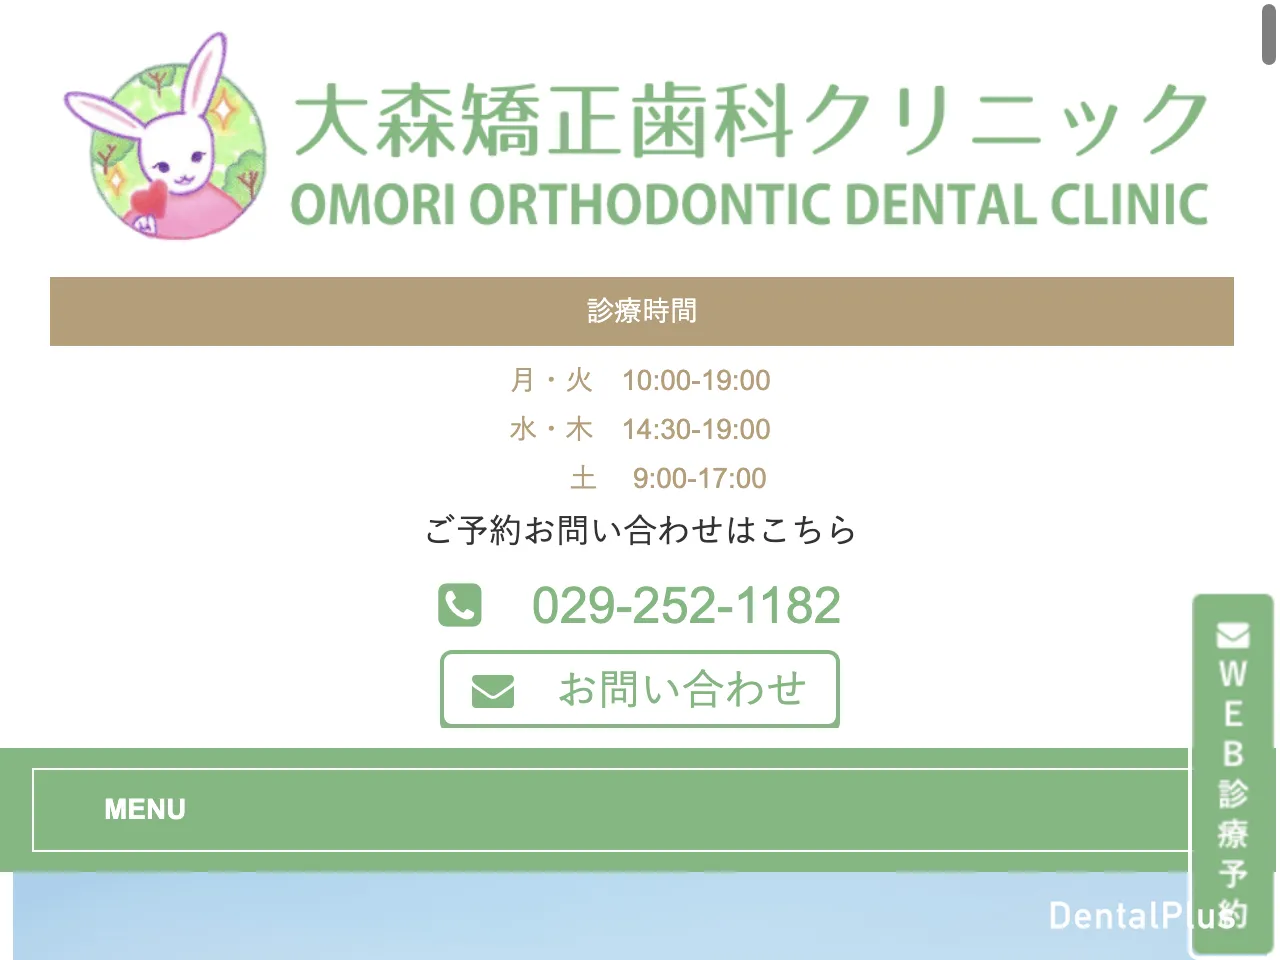 大森矯正歯科クリニックのウェブサイト